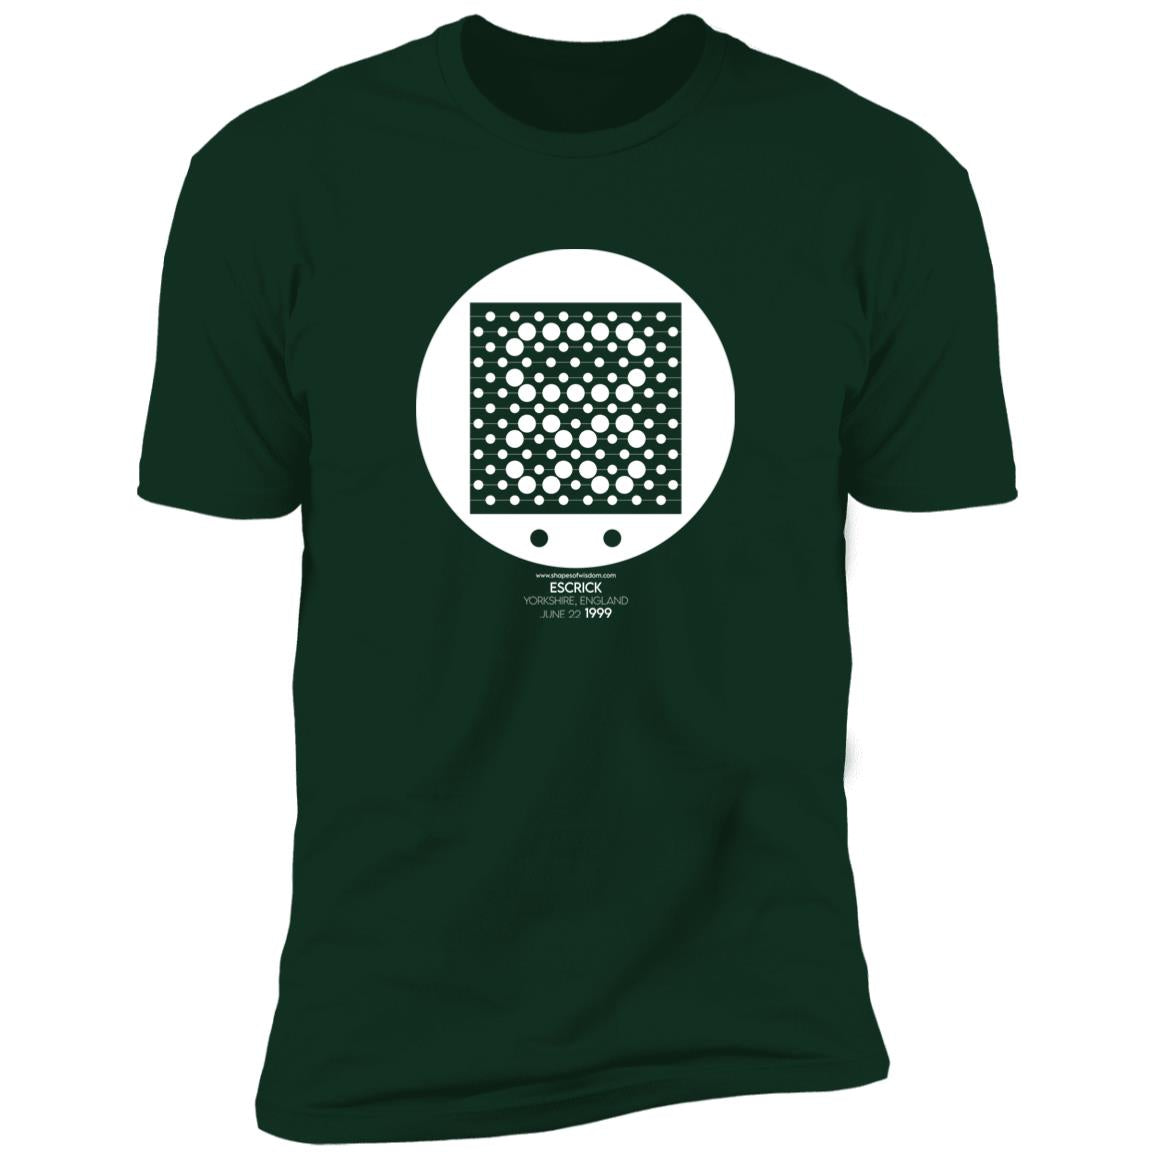 Crop Circle Premium T-Shirt - Escrick